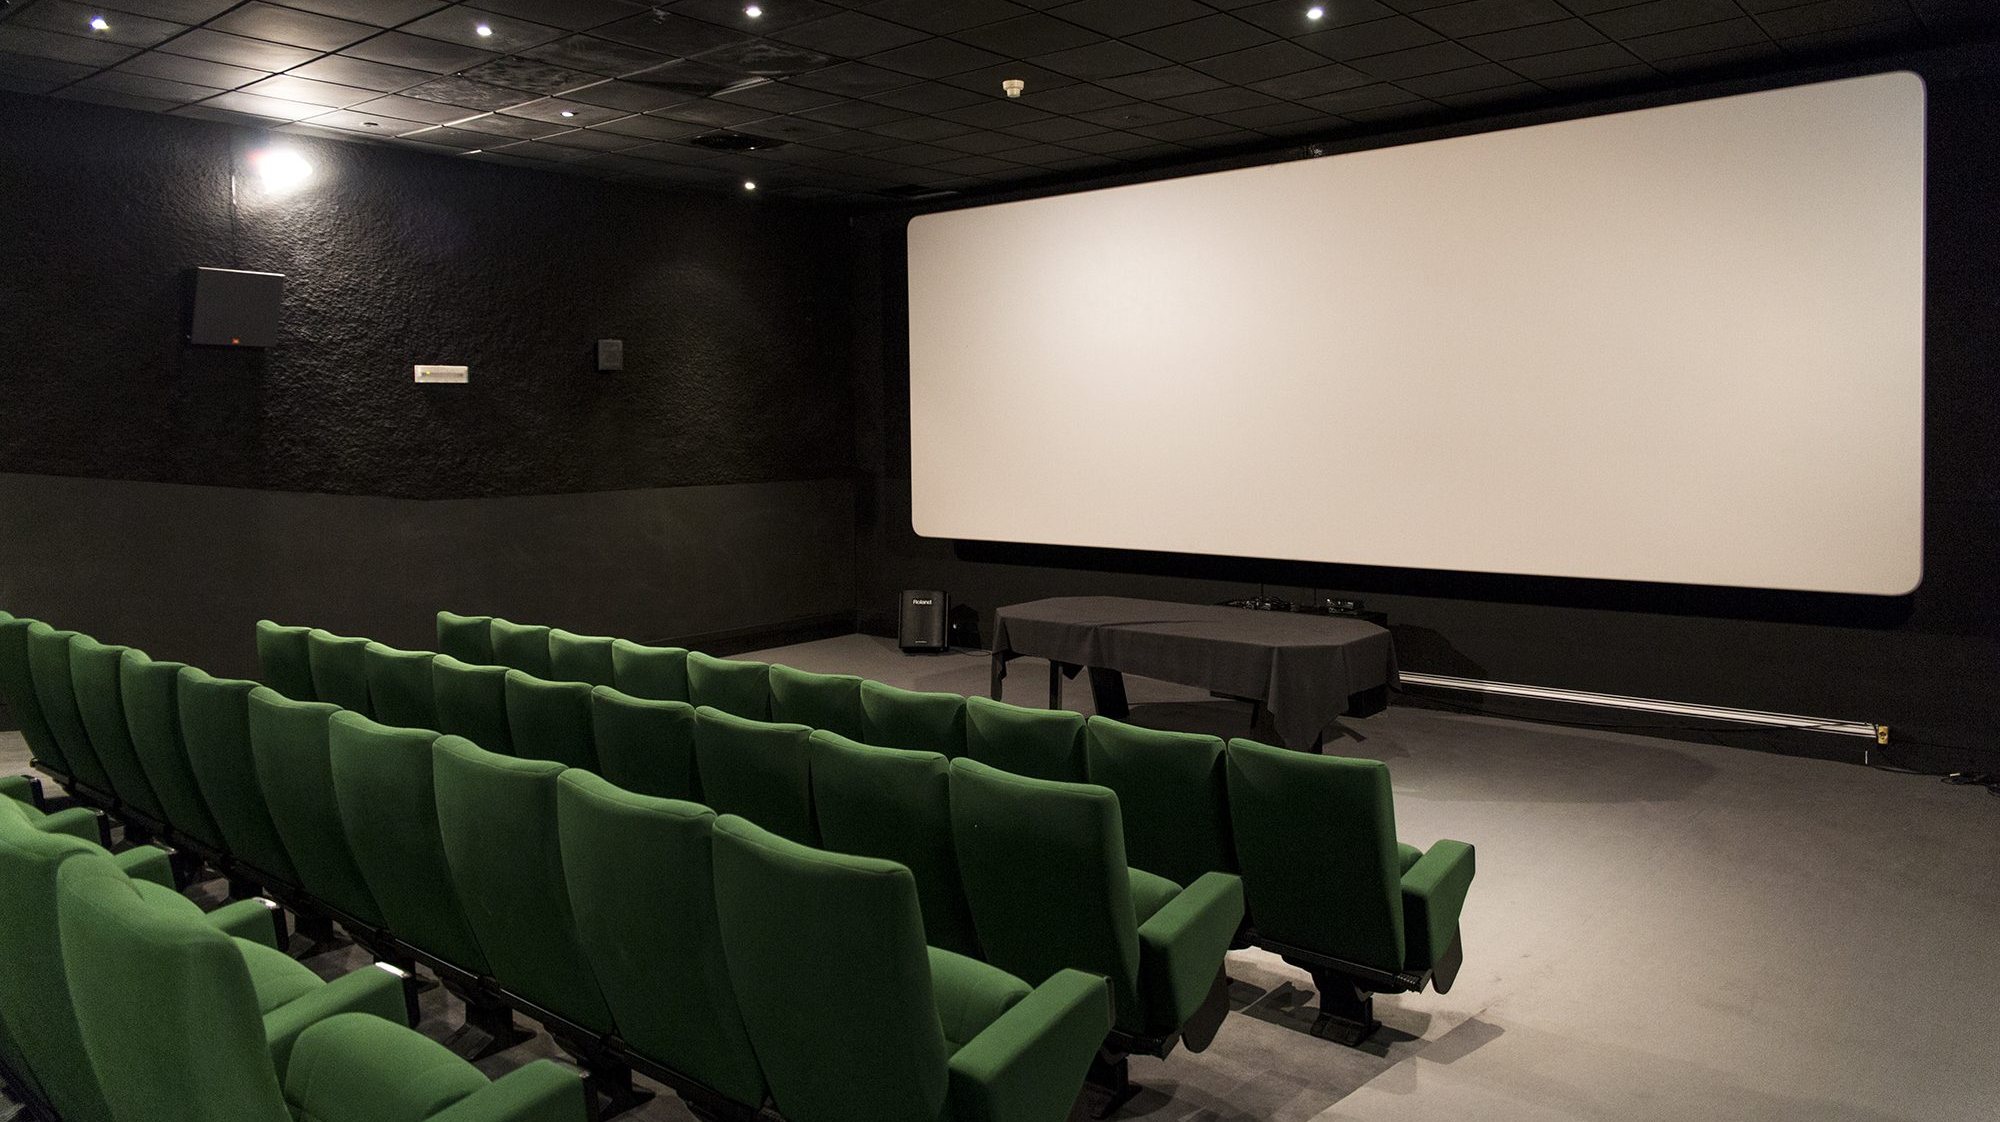 A NOS e a Cineplace são as duas maiores exibidoras em Portugal, representando mais de metade dos ecrãs de cinema no país, uma proporção que aumenta para lá de dois terços em termos de espectadores